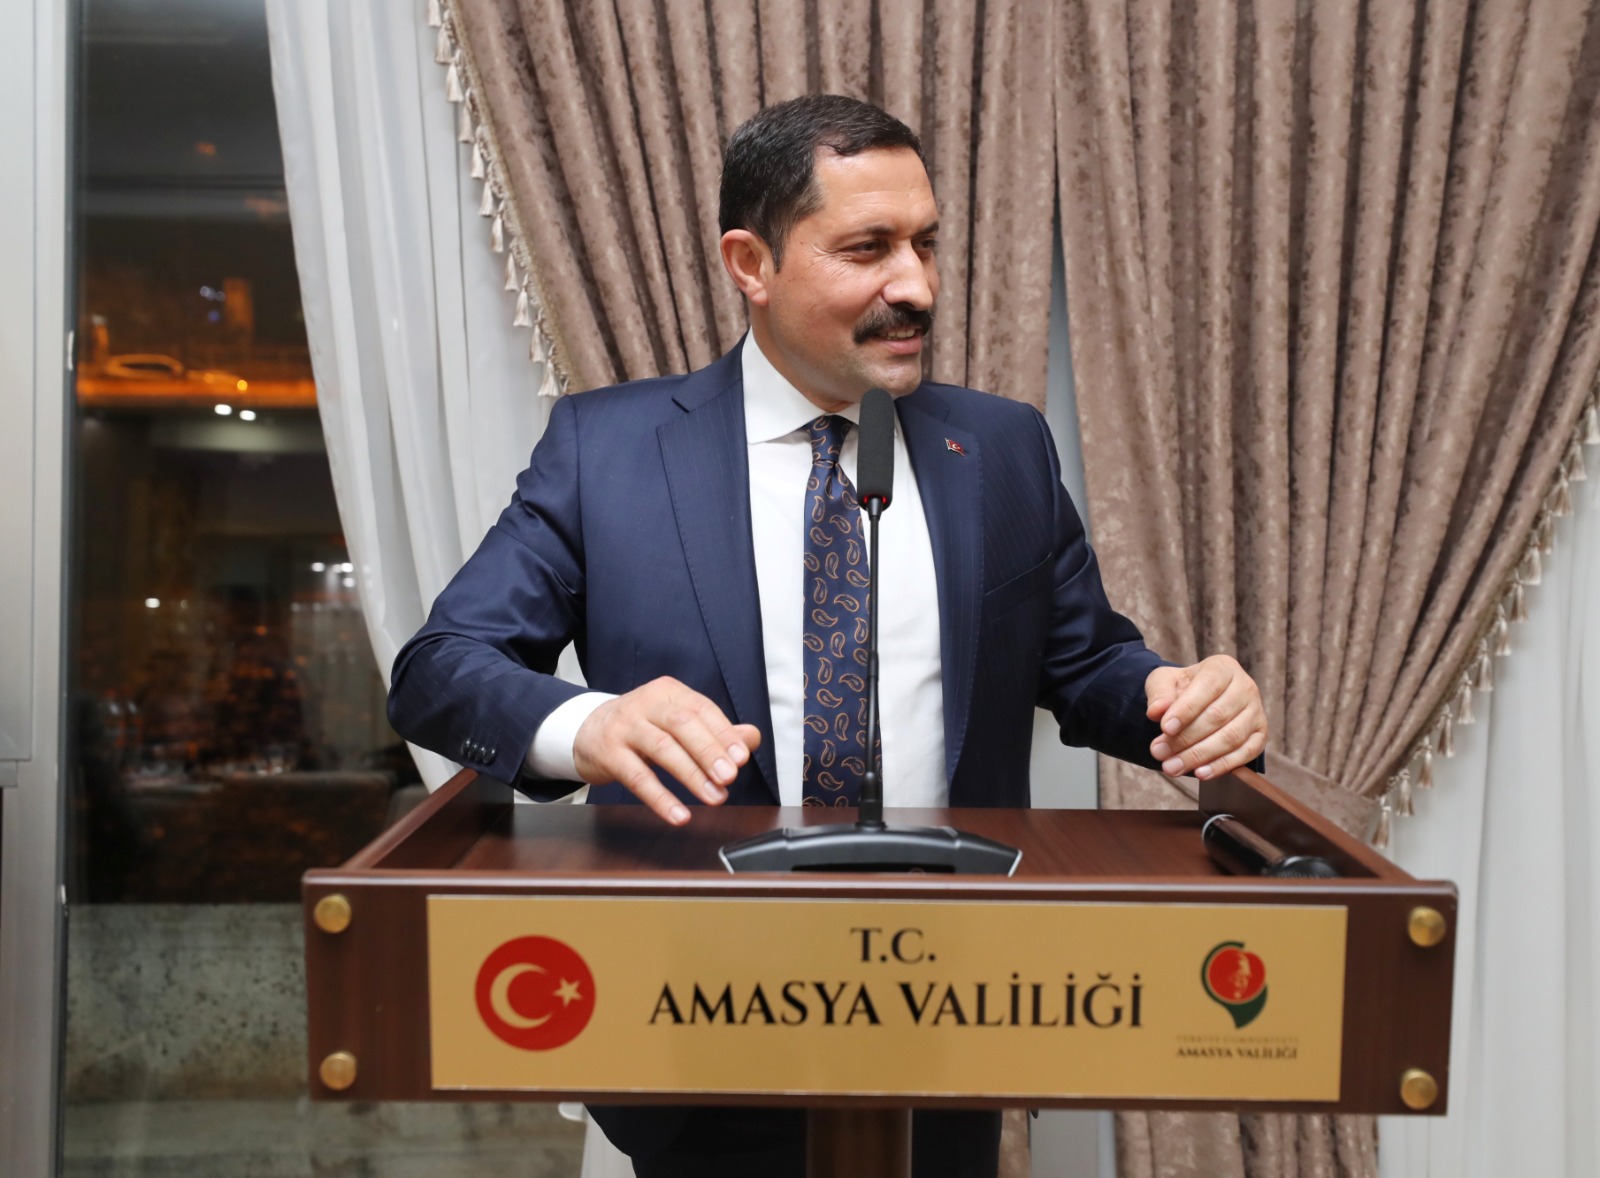 Amasya Valisi Mustafa MASATLI, Yol İş Sendikası Genel Başkanı ve Samsun 2 Nolu Şube Başkanının Katılımlarıyla İl Özel Çalışanlarımızla İftarda Buluştu